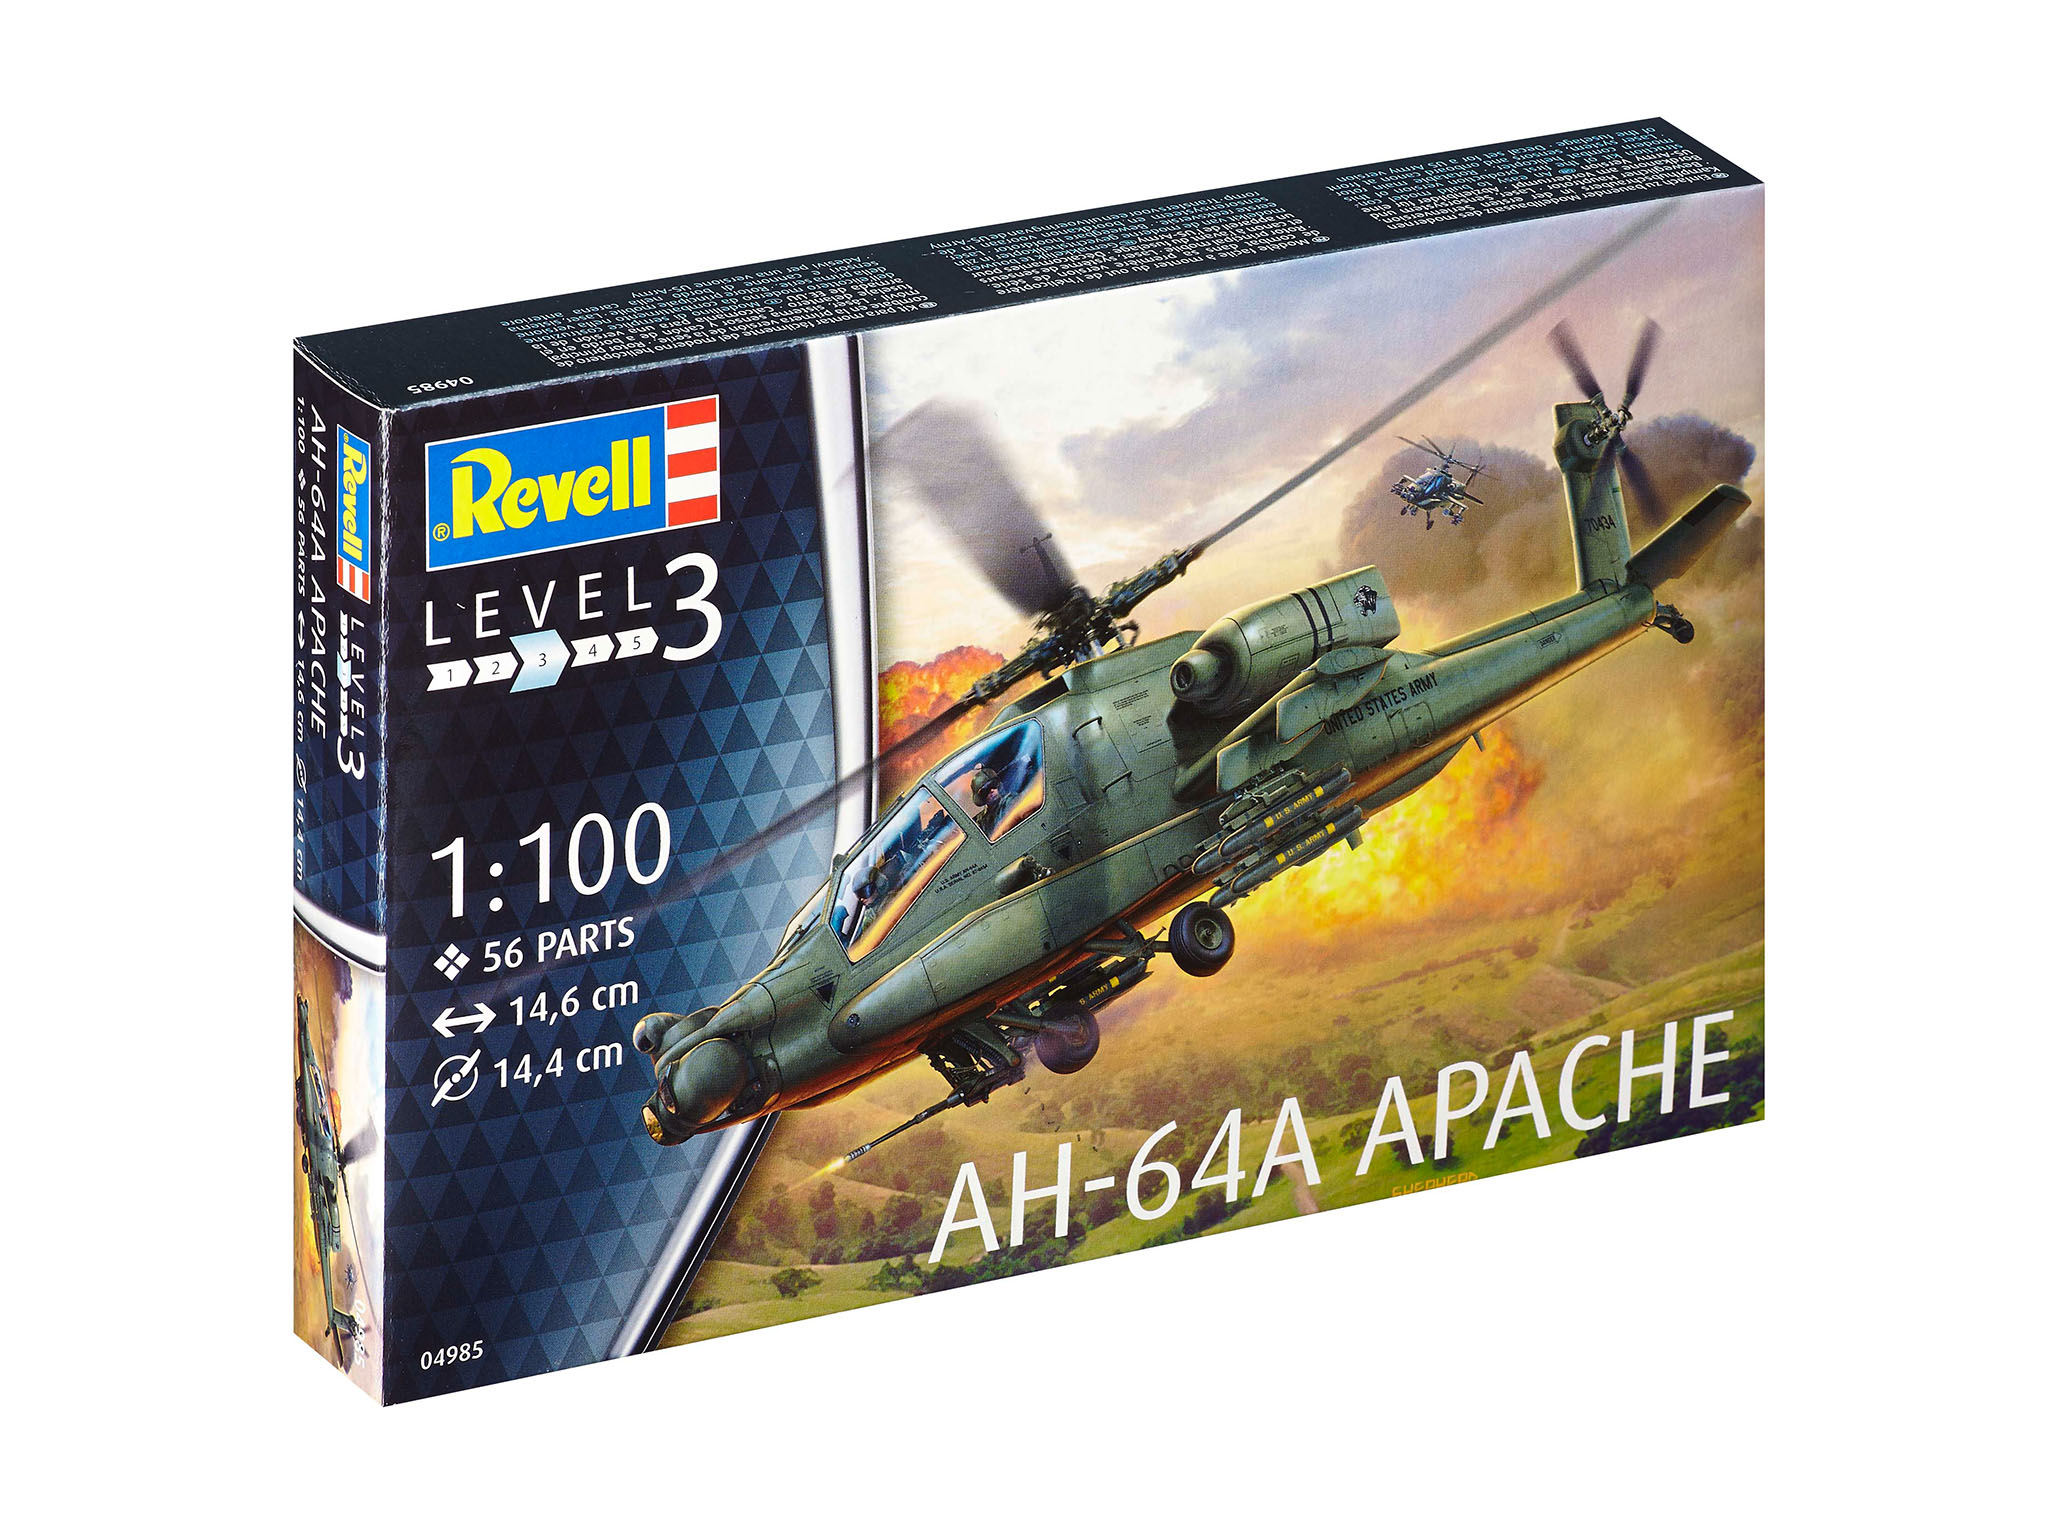 AH-64A Apache (04985)